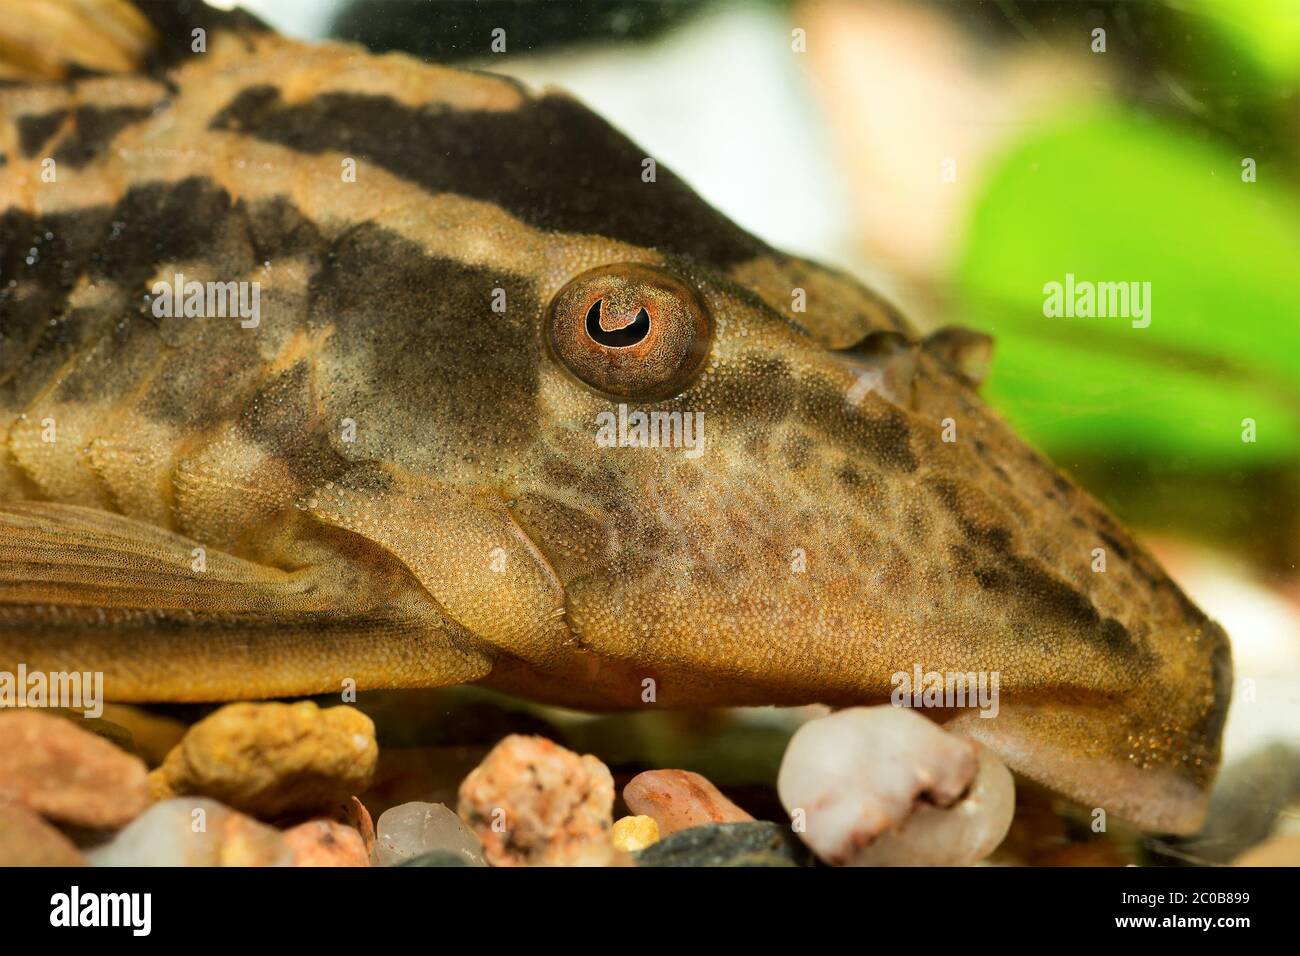 Head of suckermouthfish Stock Photo